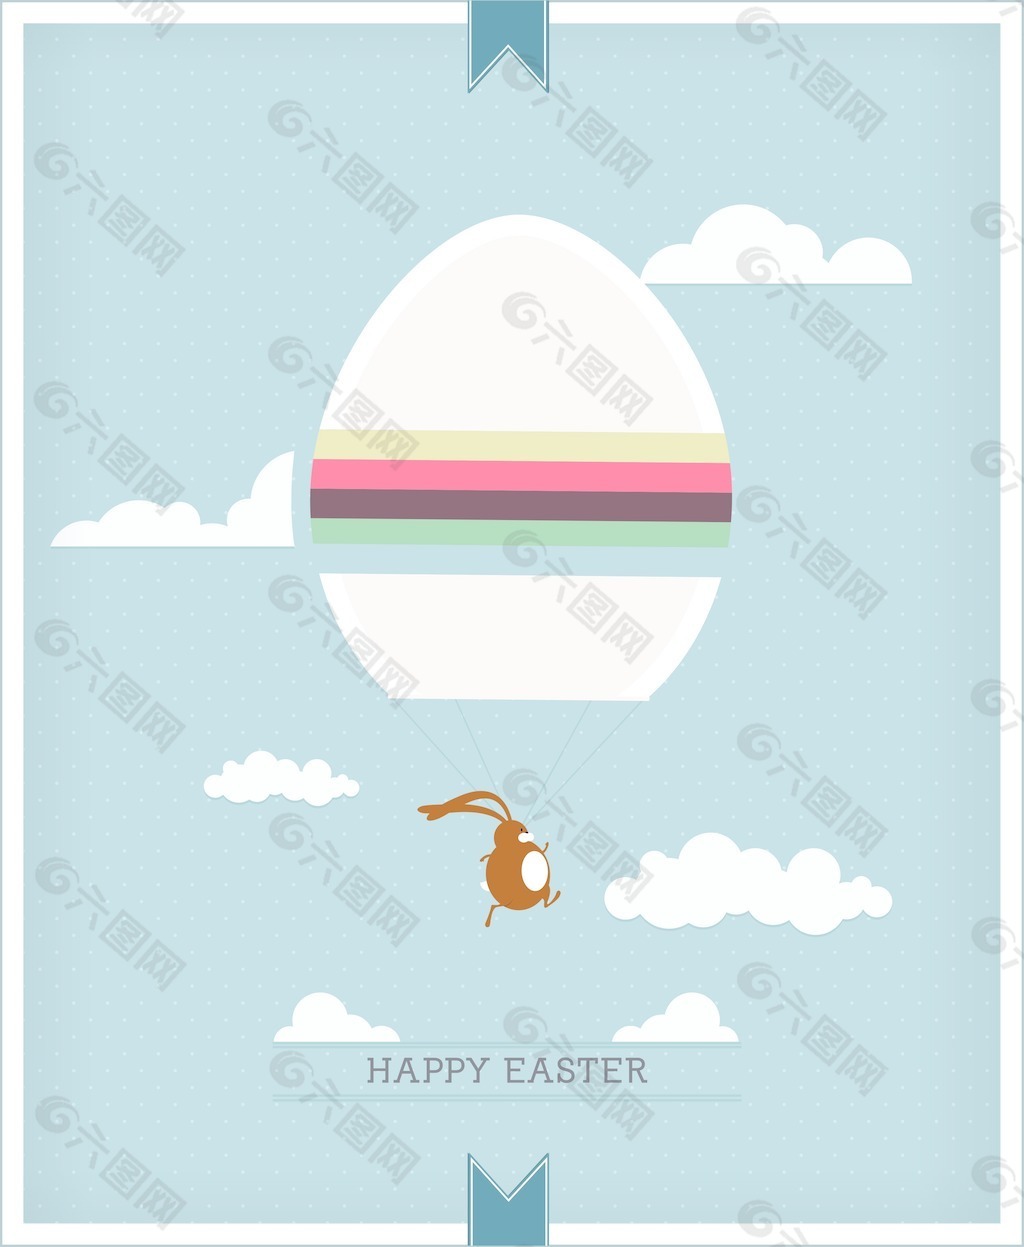 复活节彩蛋和兔子的矢量插图